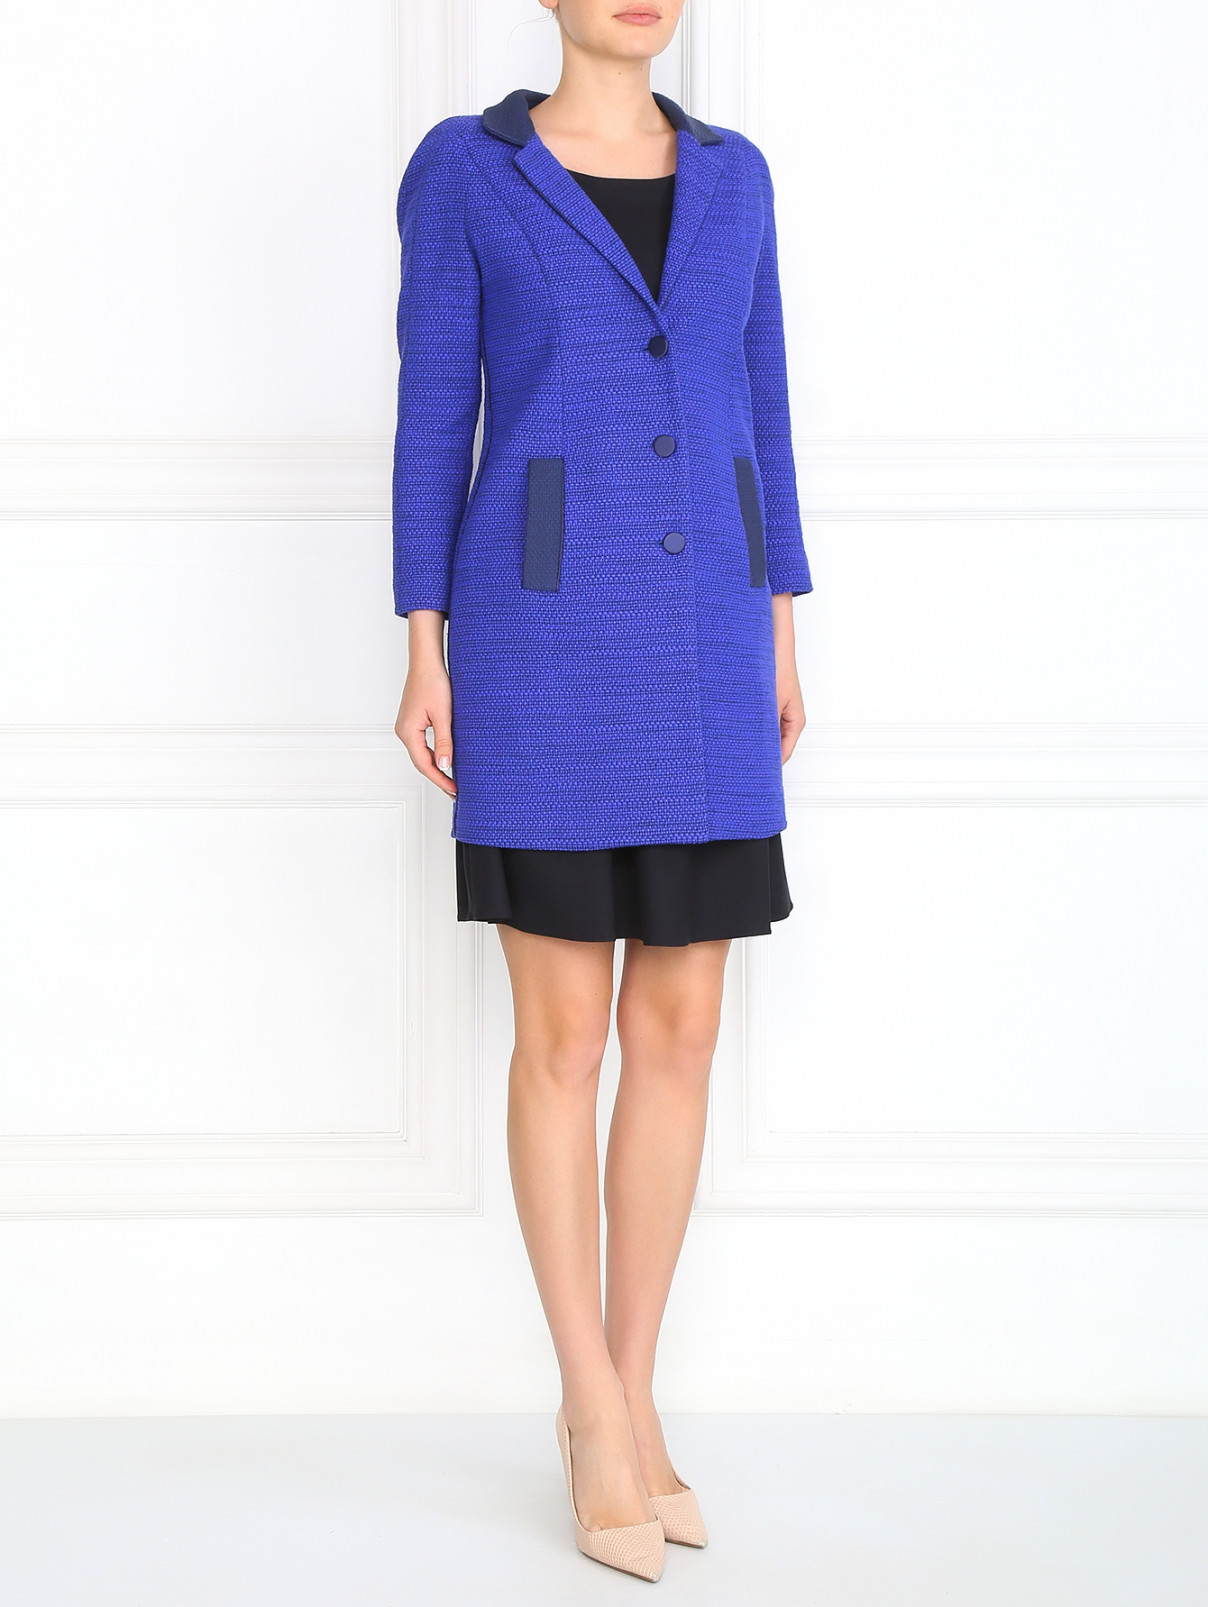 Легкое пальто из хлопка с контрастными вставками Emporio Armani  –  Модель Общий вид  – Цвет:  Фиолетовый